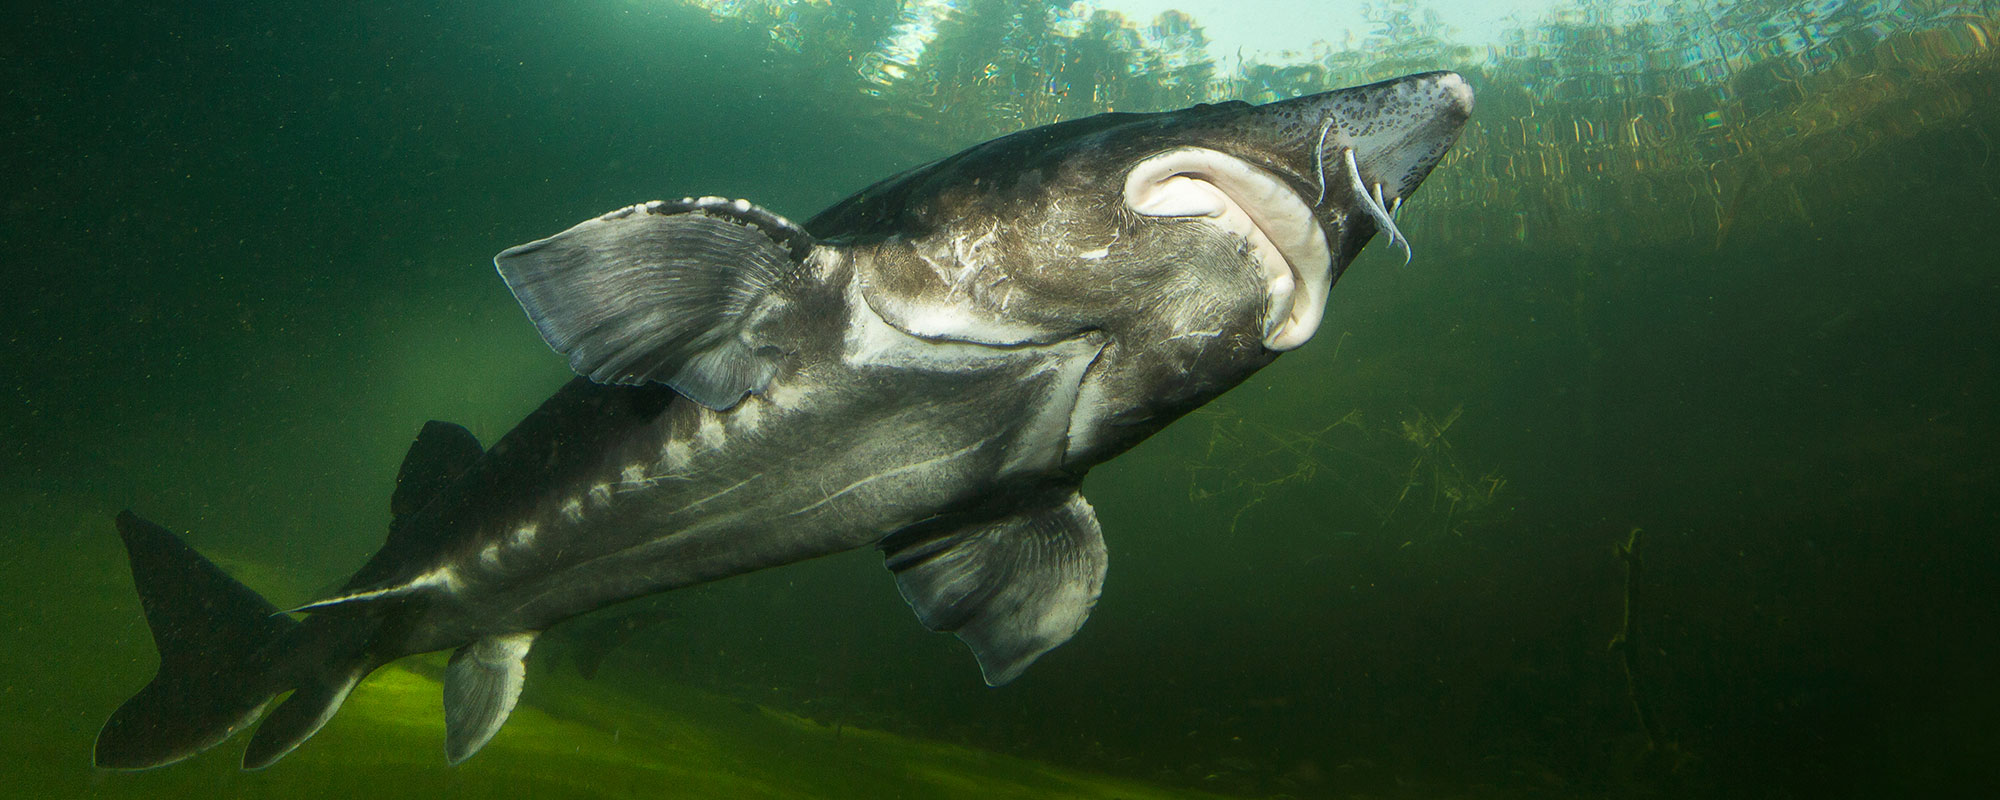 A large gray fish swimming upward